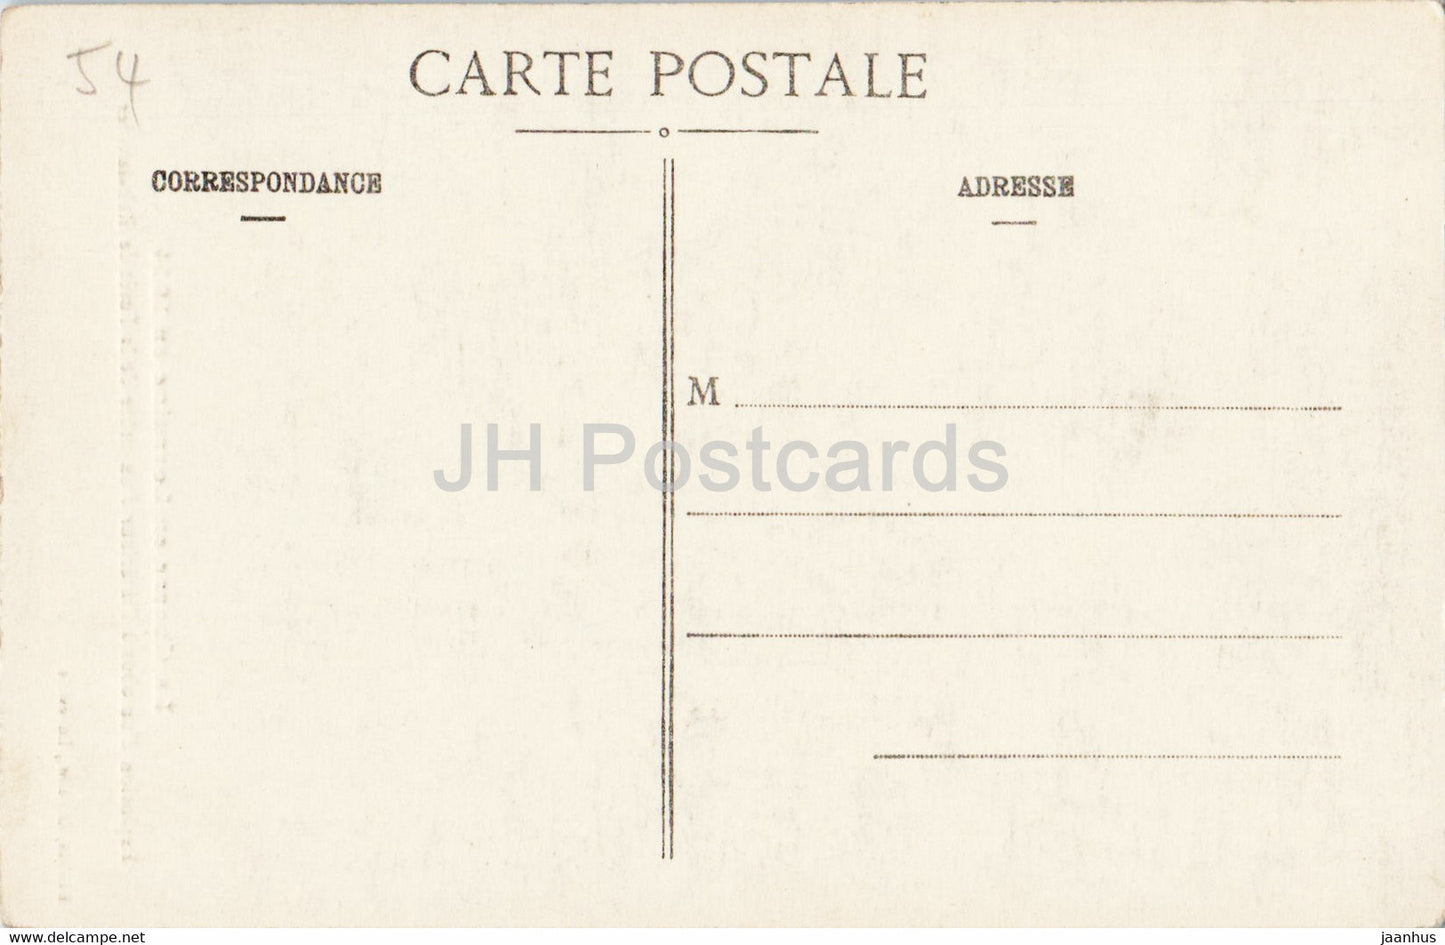 La Guerre en Lorraine en 1914 - Explosion - Foret de Rehainviller - military - old postcard - France - unused